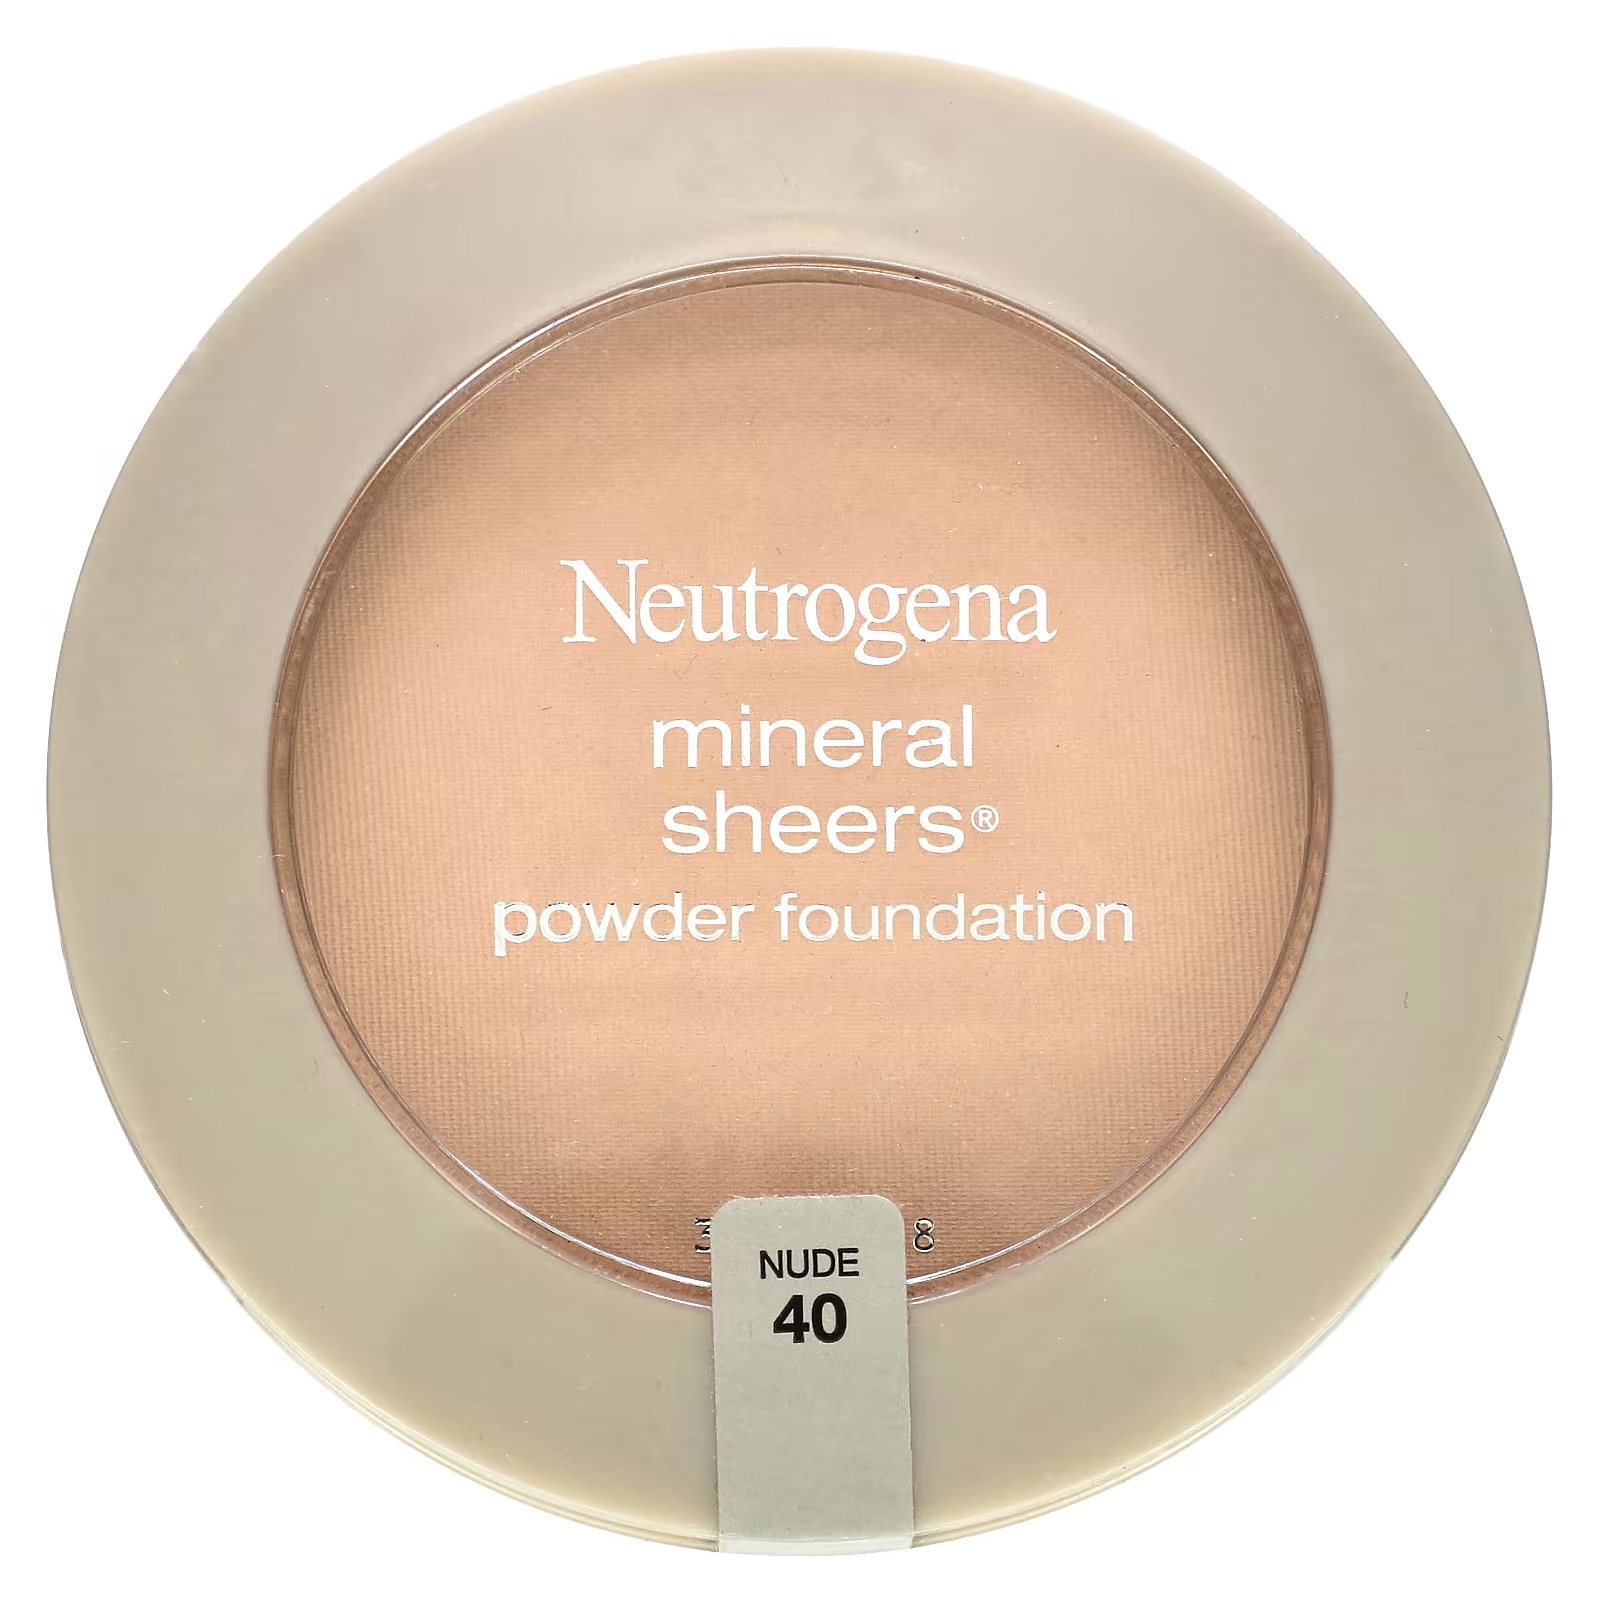 Neutrogena Mineral Sheers Пудра-пудра телесного цвета 40, 0,34 унции (9,6 г) neutrogena очищающая минеральная пудра нюд 40 11 г 0 38 унции